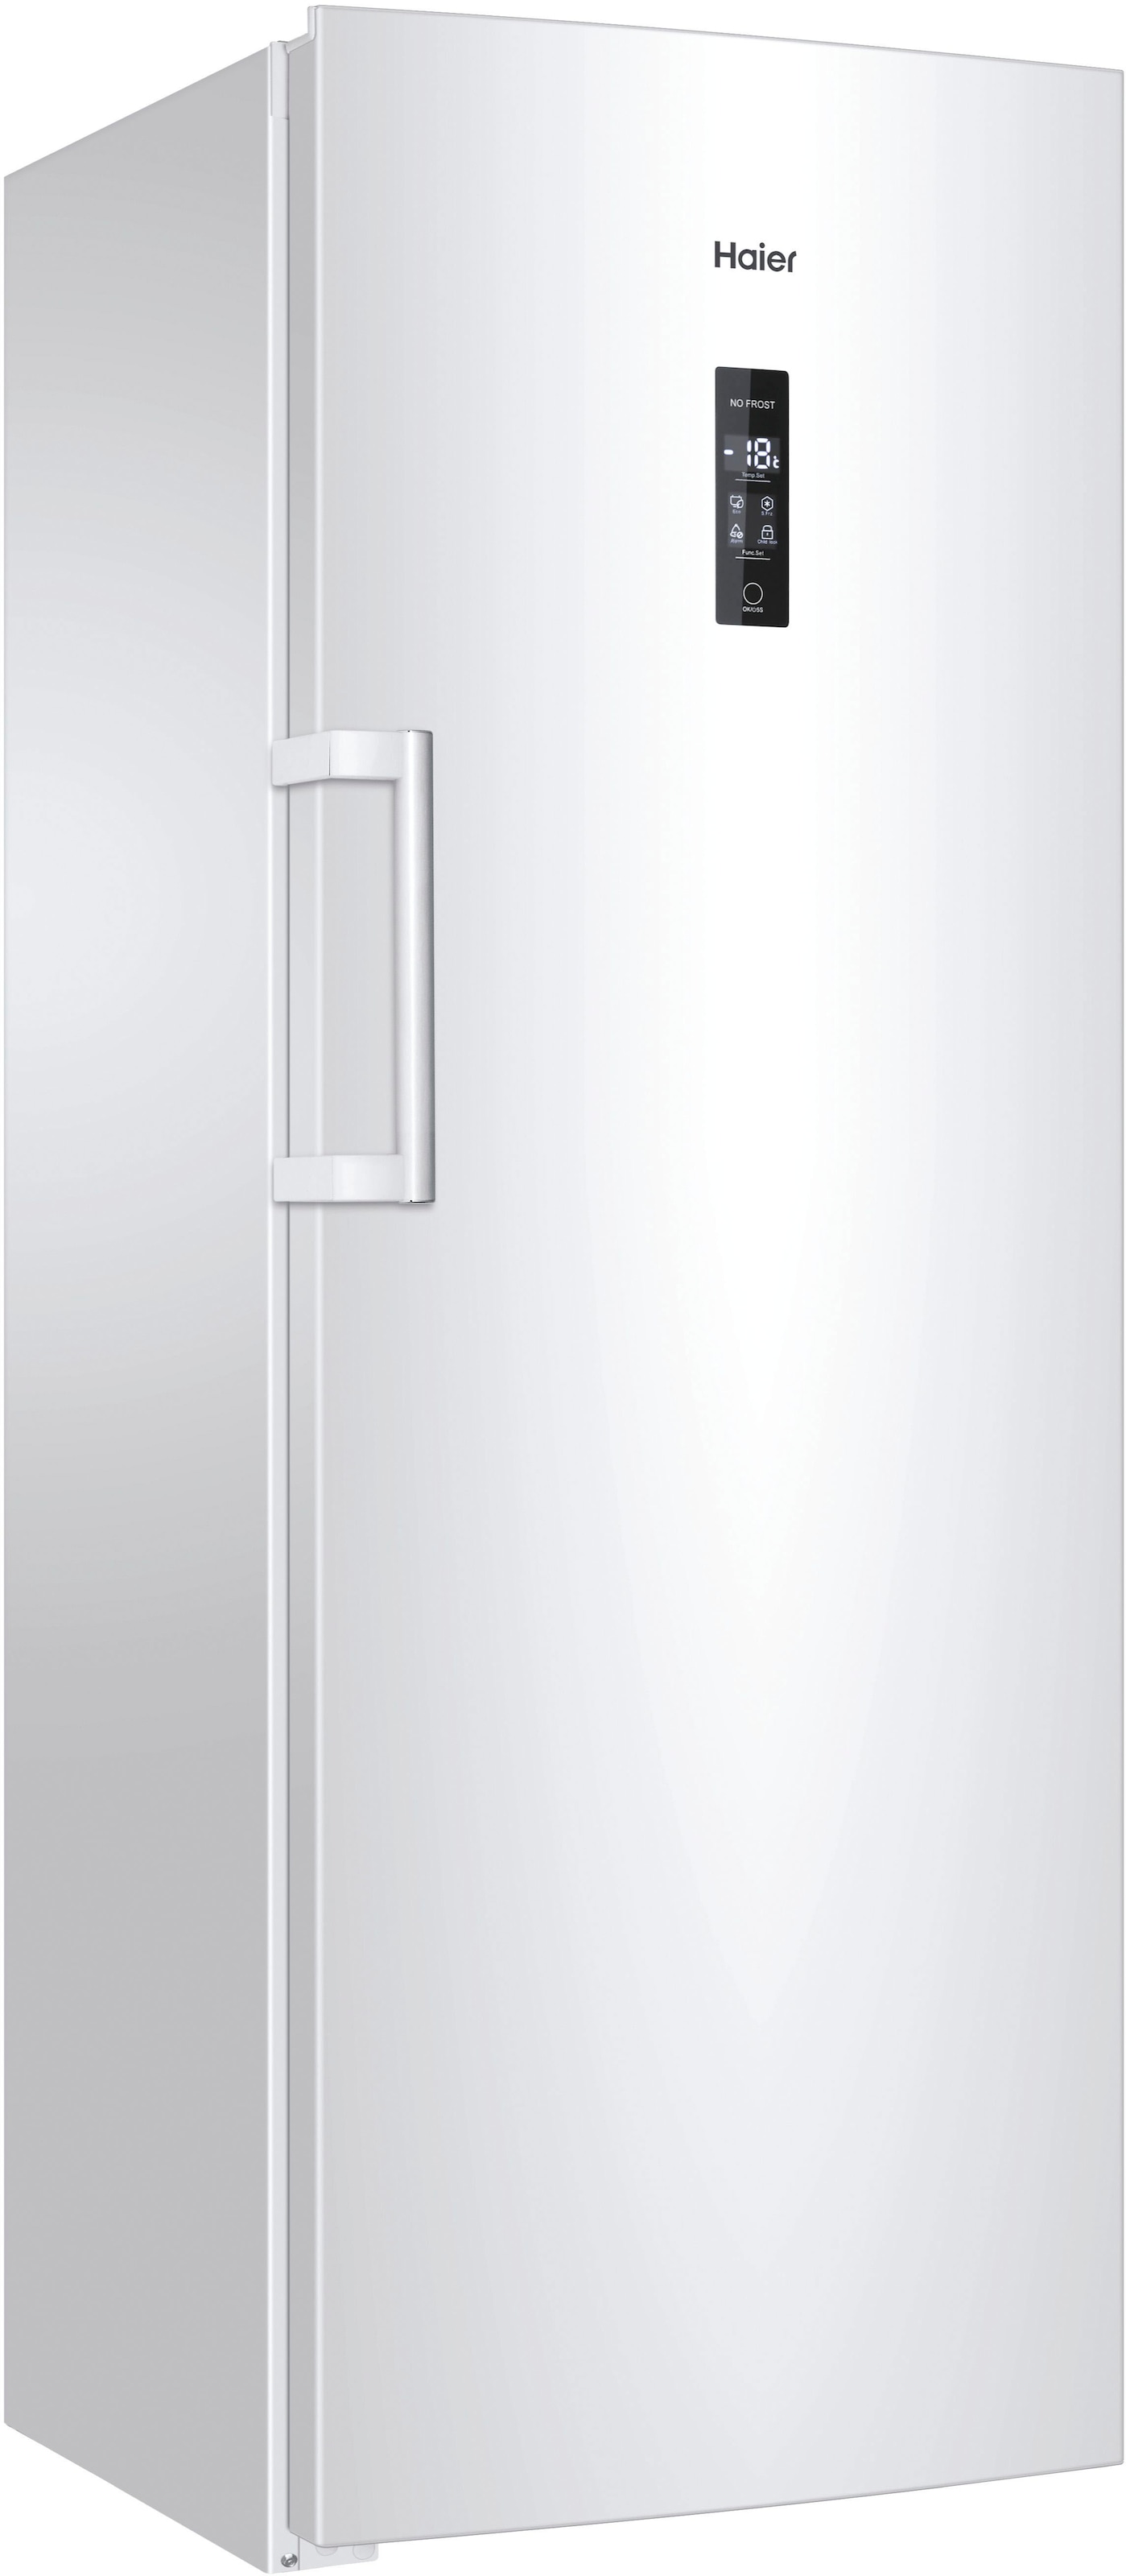 Haier Gefrierschrank »H2F-220WSAA«, 168 cm hoch, 60 cm breit